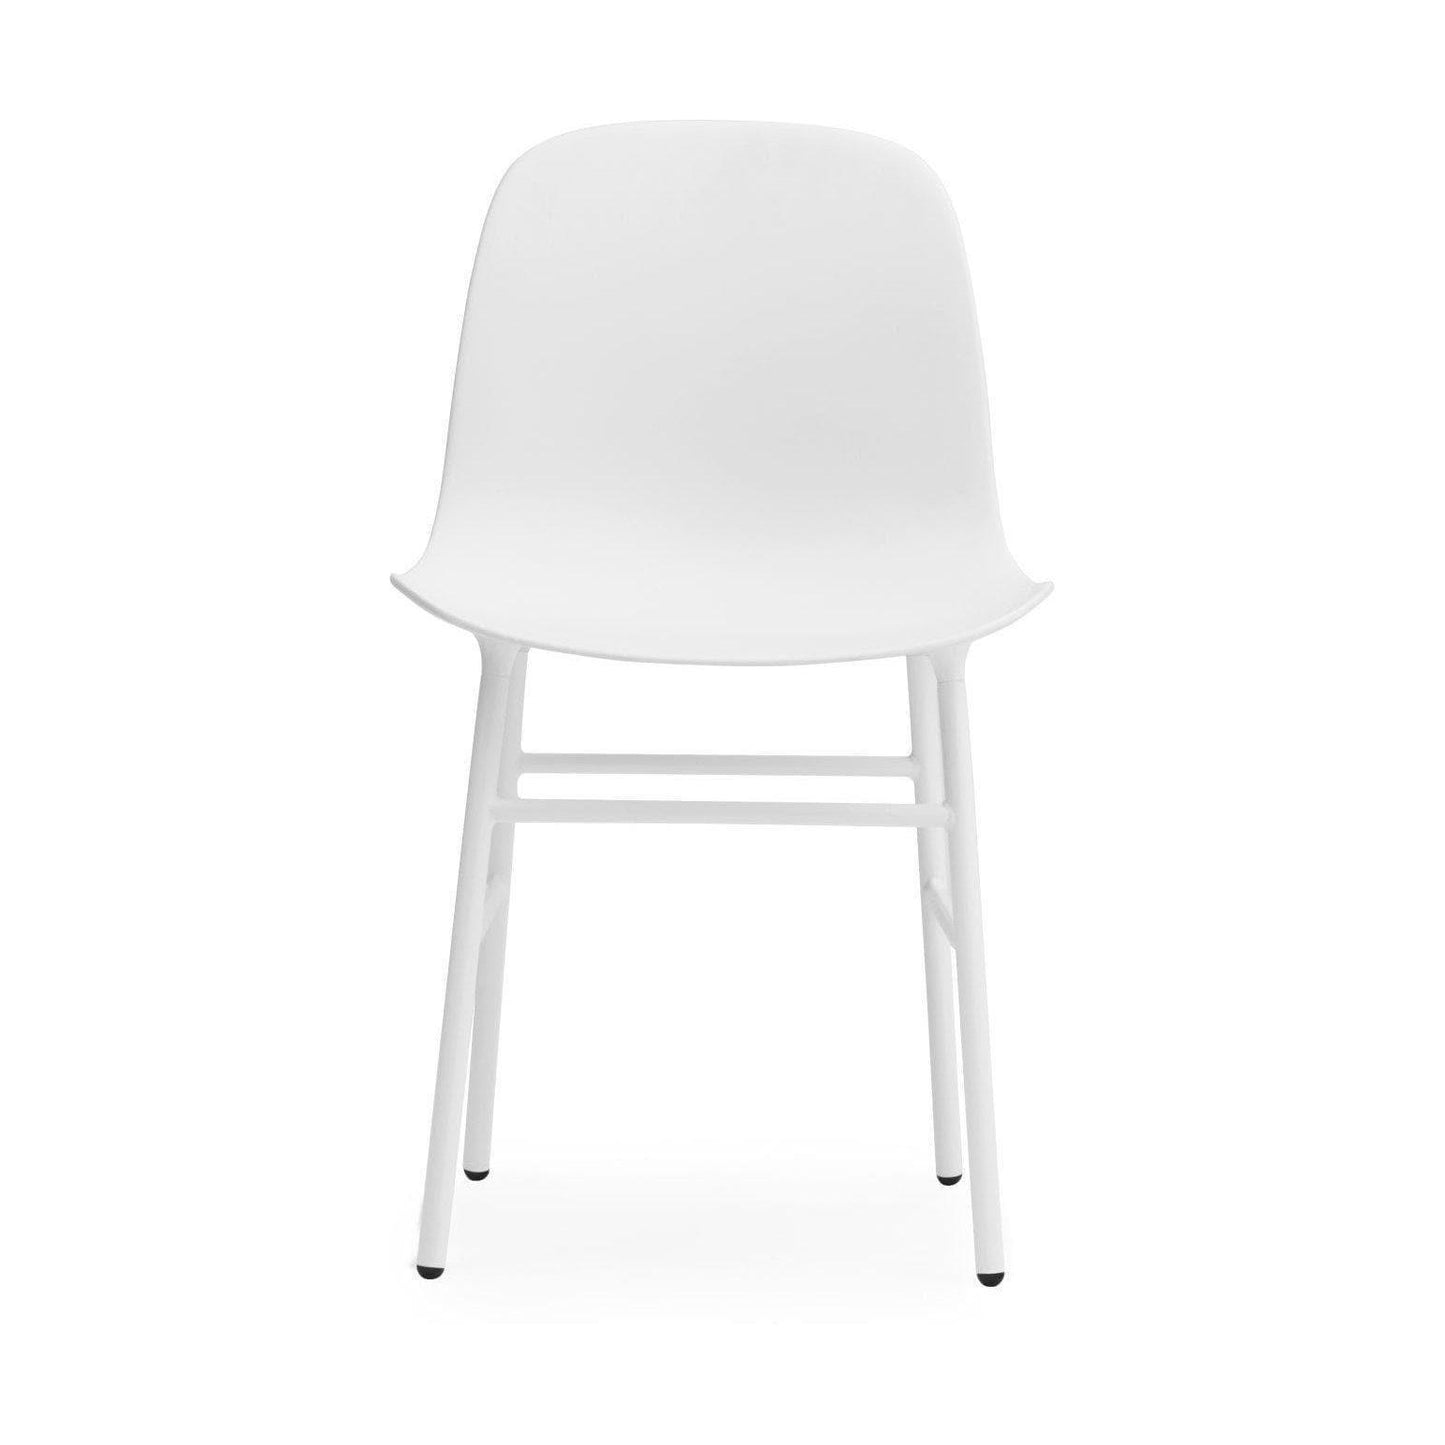 Normann Copenhagen Form Chair white steel